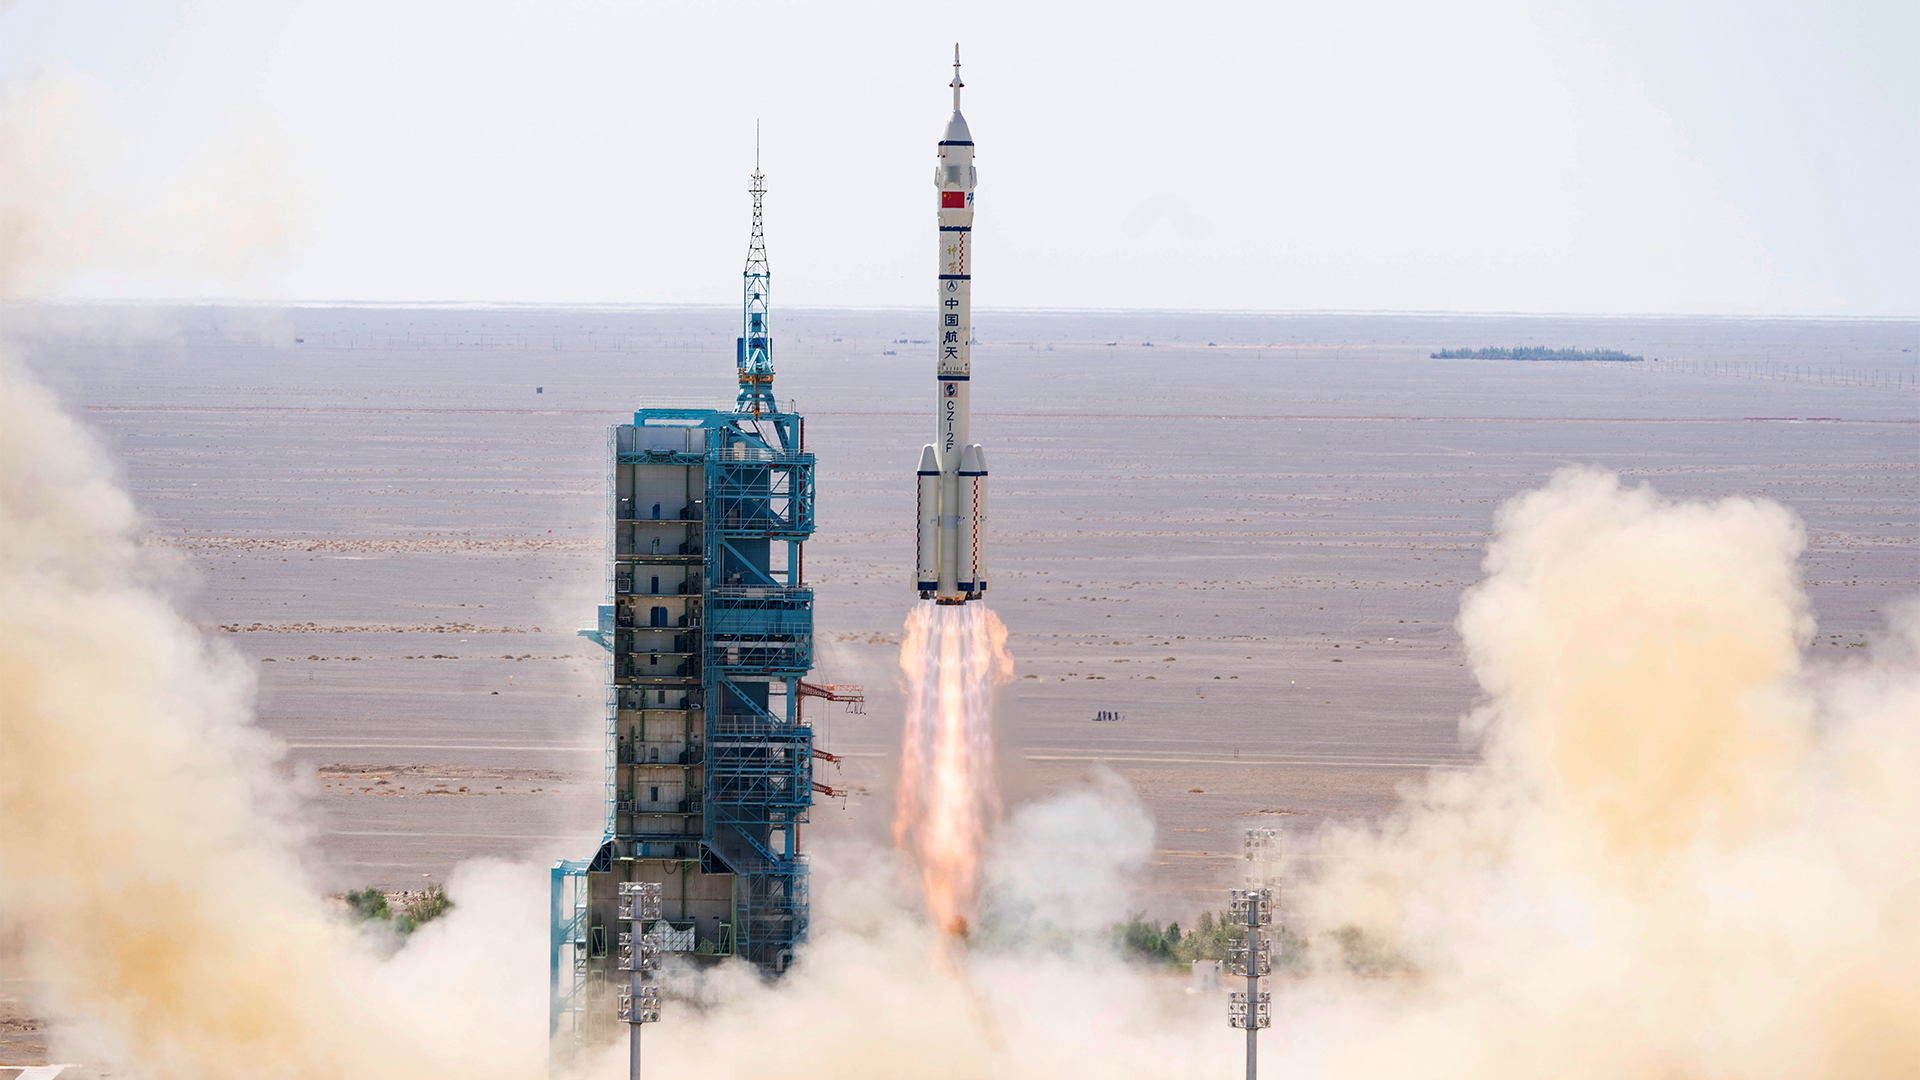 Das bemannte Raumschiff "Shenzhou-14" startet auf einer Trägerrakete vom Jiuquan Satellite Launch Center im Nordwesten Chinas. | dpa